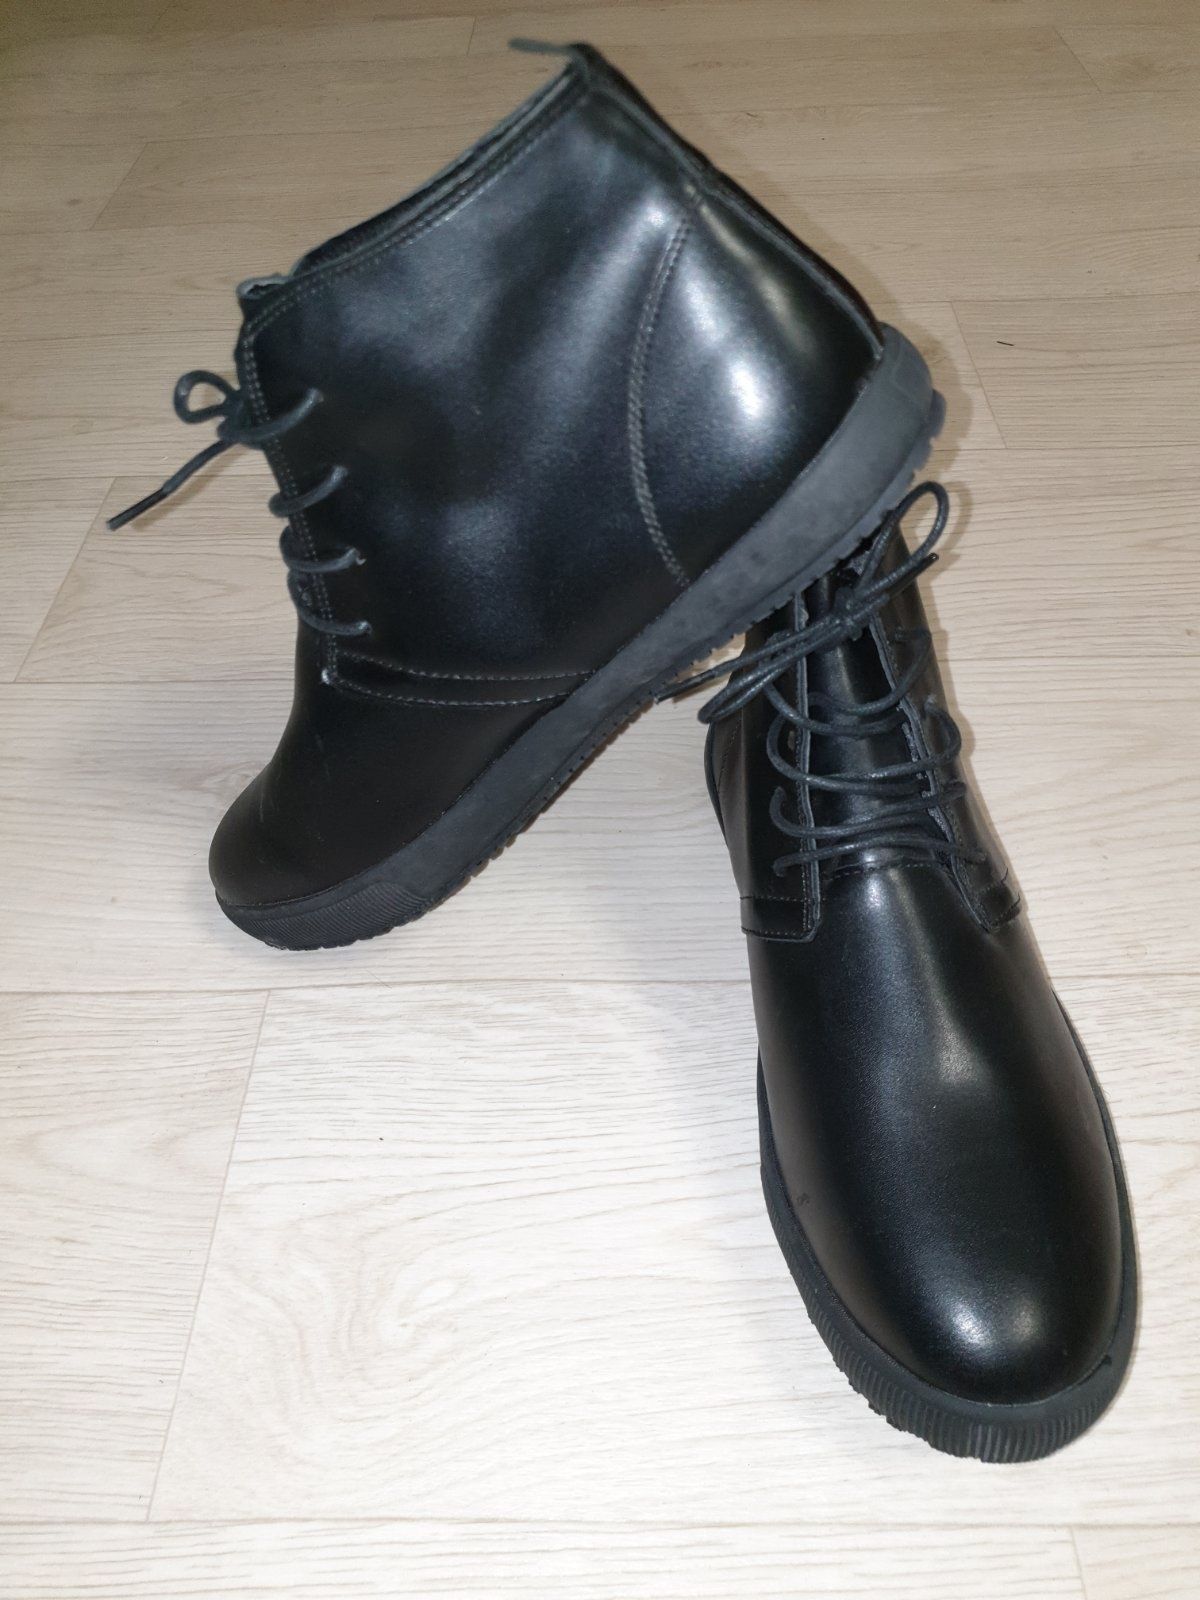 43 р. Тёплые мужские зимние ботинки с мехом 42 размер стелька 27.7 мм.